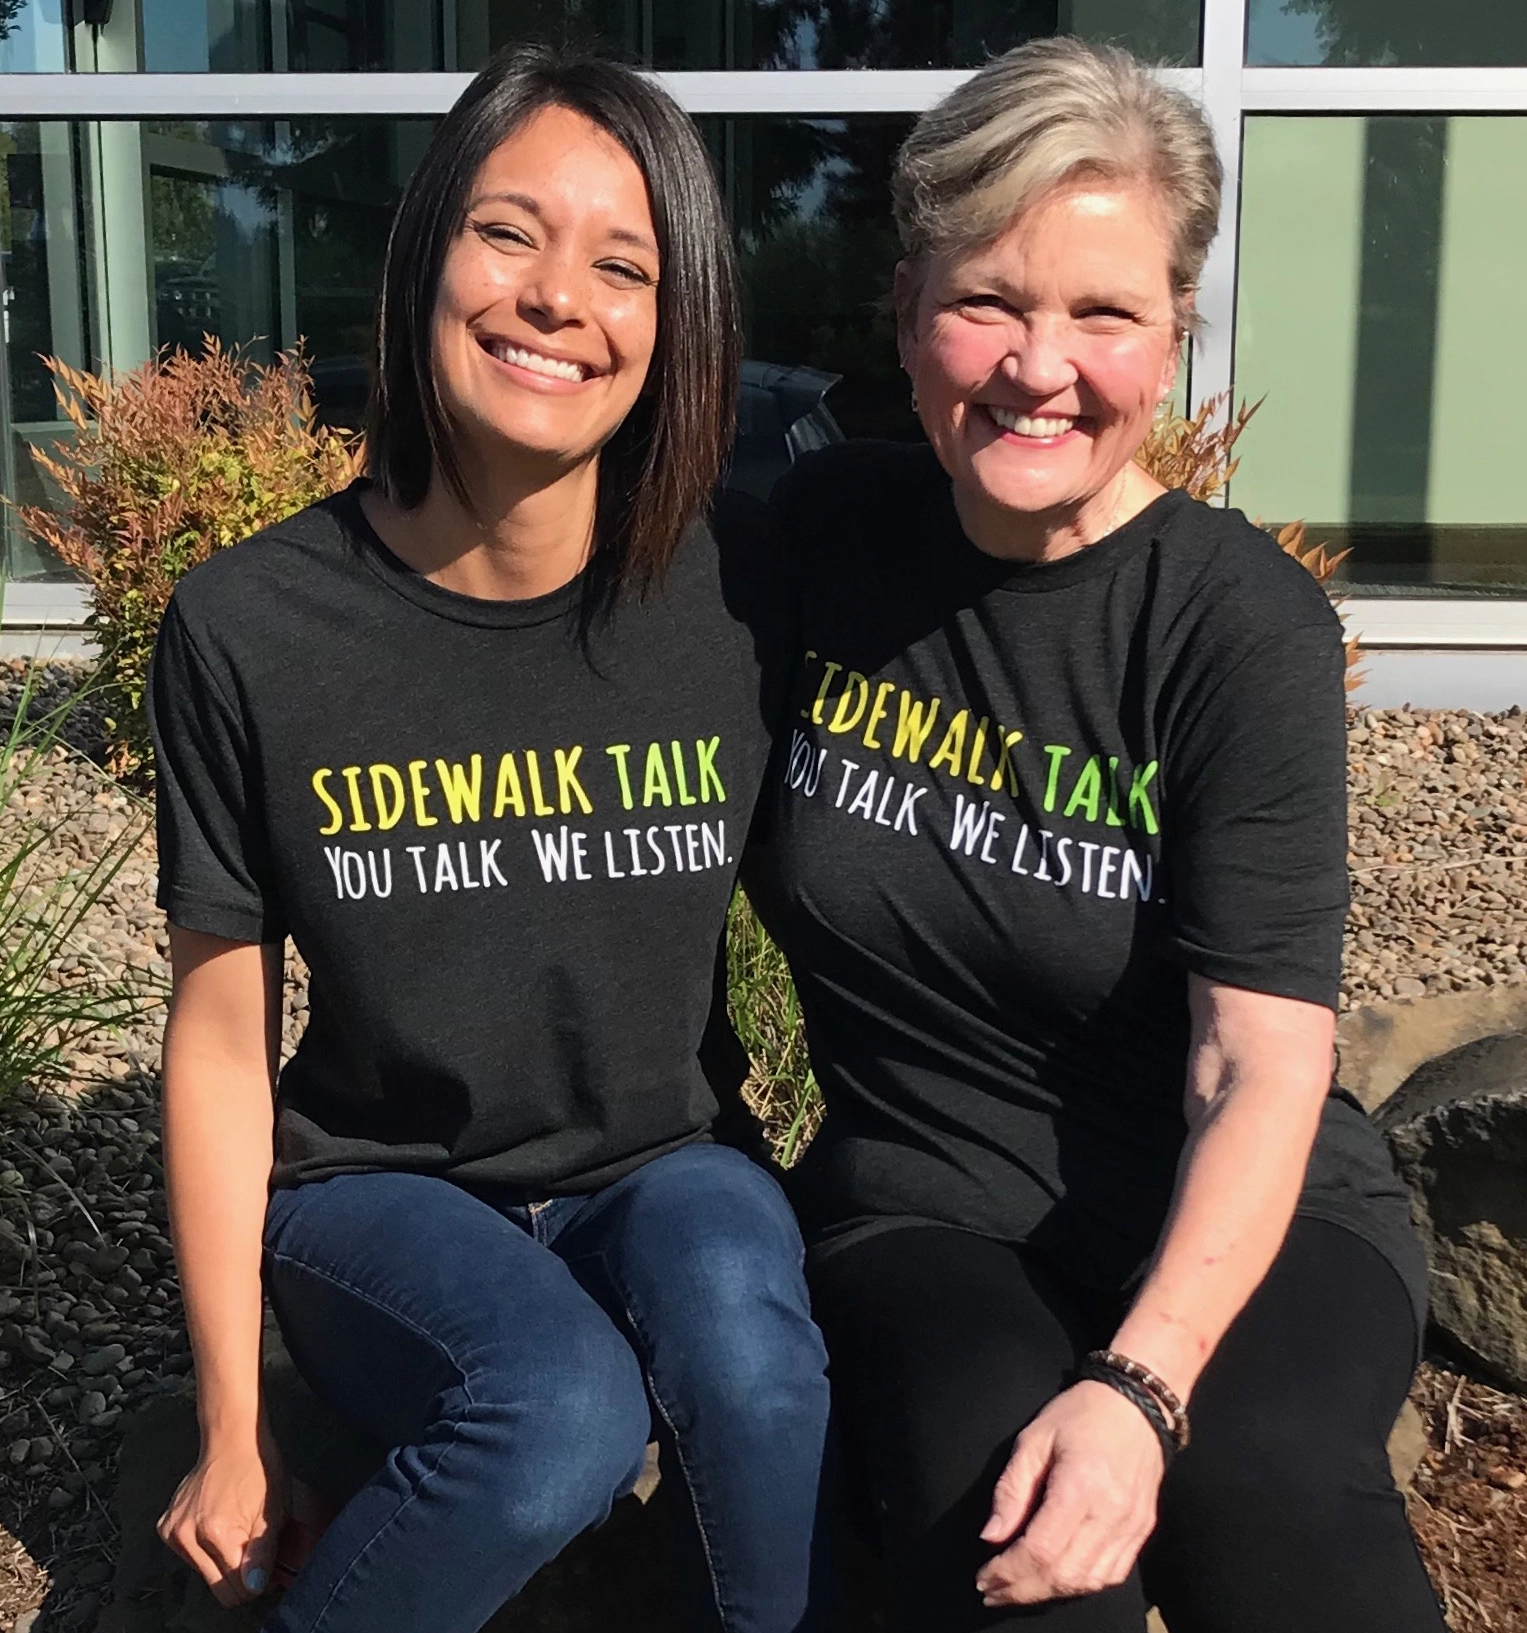 Sidewalk Talk Volunteers